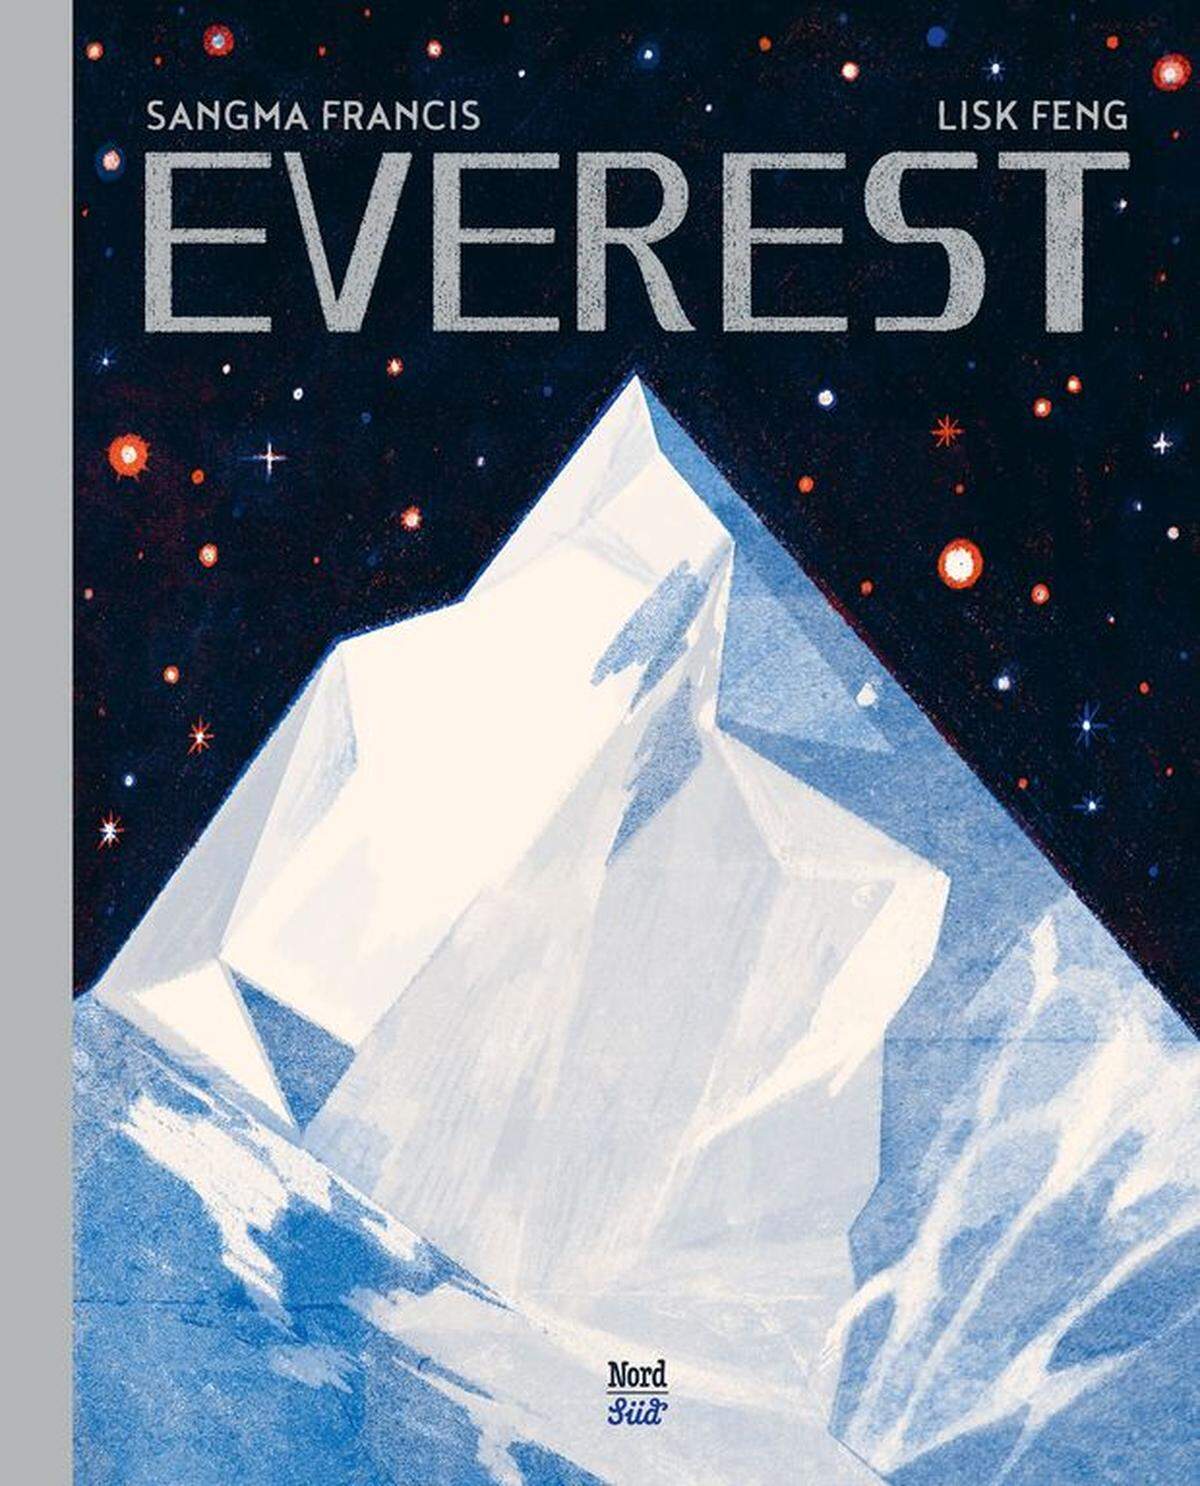 Das Hochgebirge des Himalaya ist „ein Ort der Entdeckung, der Erfindung und der Fantasie“, steht in der Einleitung von „Everest“. Den Beweis dafür, dass das nicht übertrieben ist, tritt das Buch auf 80 Seiten an. Da wird erklärt, wie man so etwas Riesiges überhaupt messen kann (er sieht übrigens aus der Ferne gar nicht wie der höchste Berg aus), es werden Yaks und Sherpas vorgestellt, von den hinduistischen und buddhistischen Gebetsstätten in den Tälern und auf den Pässen erzählt, vom Bergsteigen und dem Kampf um den Sauerstoff und von Starkwinden. Die Illustratorin stellt all das in einer Klarheit dar, die man oft sucht: mit wunderschönen Bildern auf eindrucksvoll gestalteten Seiten. Ein visueller Genuss in Blau, Grau, Weiß und Rottönen. Übrigens wird auch der Müll am Berg nicht verschwiegen, selbst natürliche Abfälle sind ein Problem, denn bei den Temperaturen am Berg kann nichts richtig verrotten. Lisk Feng, Sangma Francis: „Everest". Erschienen im NordSüd Verlag. 80 Seiten; 20,60 Euro. Alter: Ab sieben Jahren.